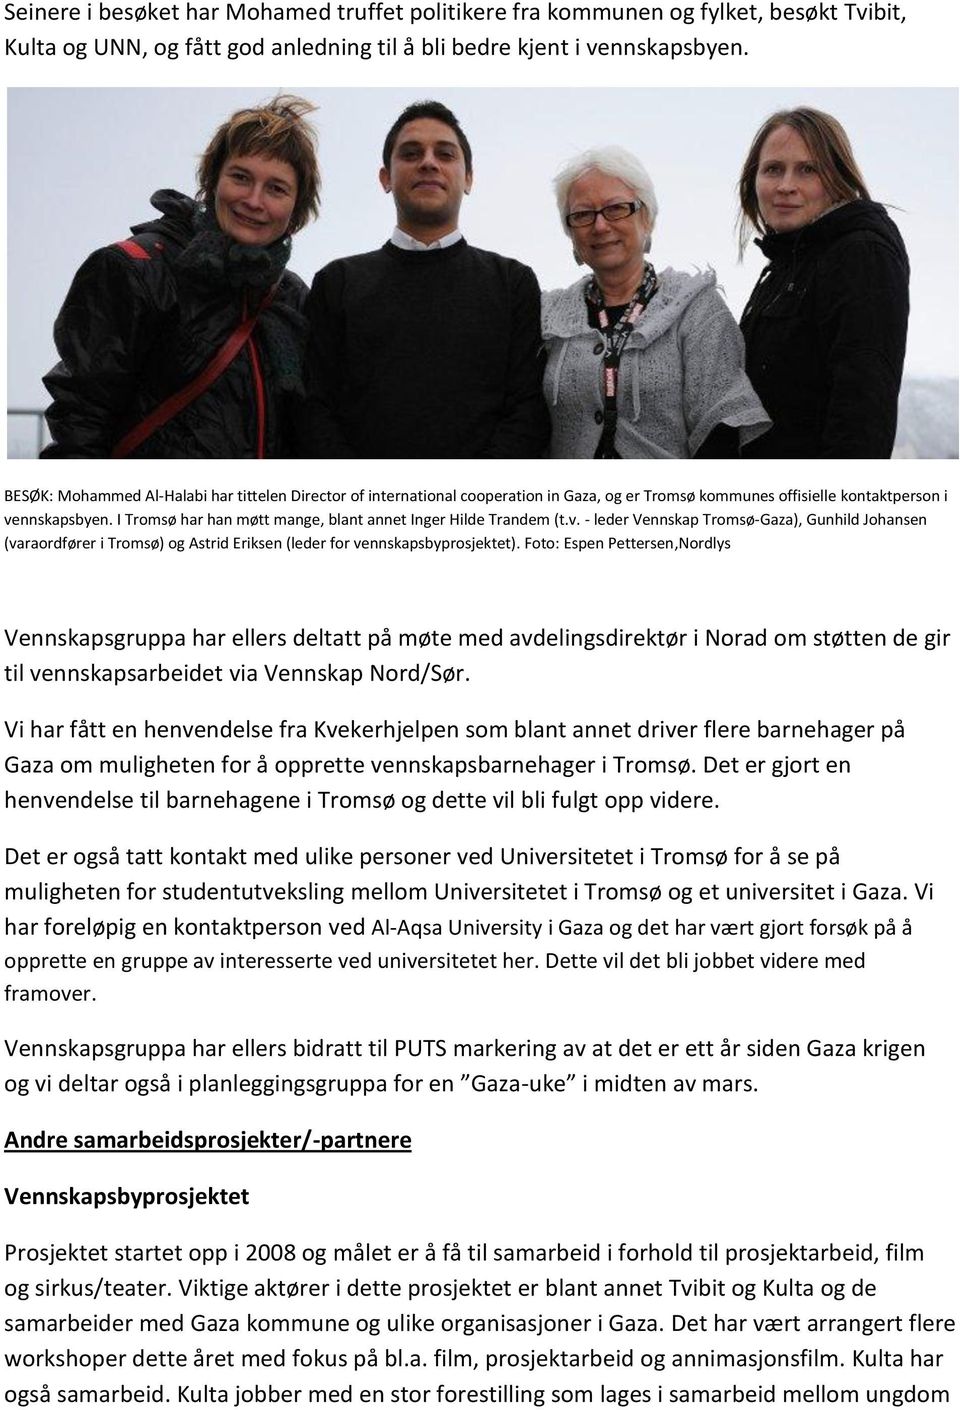 I Tromsø har han møtt mange, blant annet Inger Hilde Trandem (t.v. - leder Vennskap Tromsø-Gaza), Gunhild Johansen (varaordfører i Tromsø) og Astrid Eriksen (leder for vennskapsbyprosjektet).